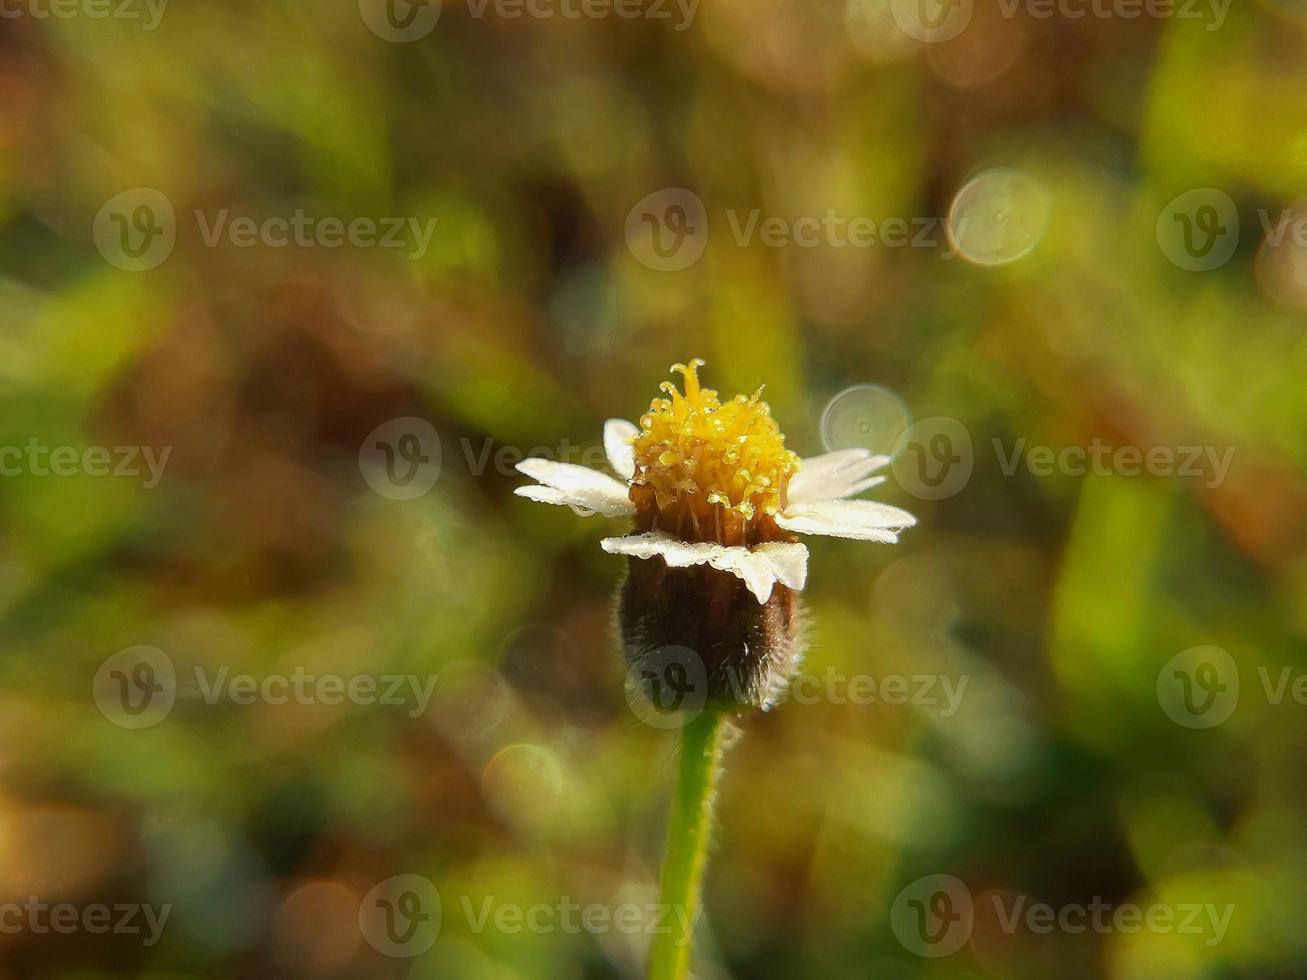 flor amarilla blanca con fondo liso. fotografía macro, enfoque estrecho. foto de alta calidad